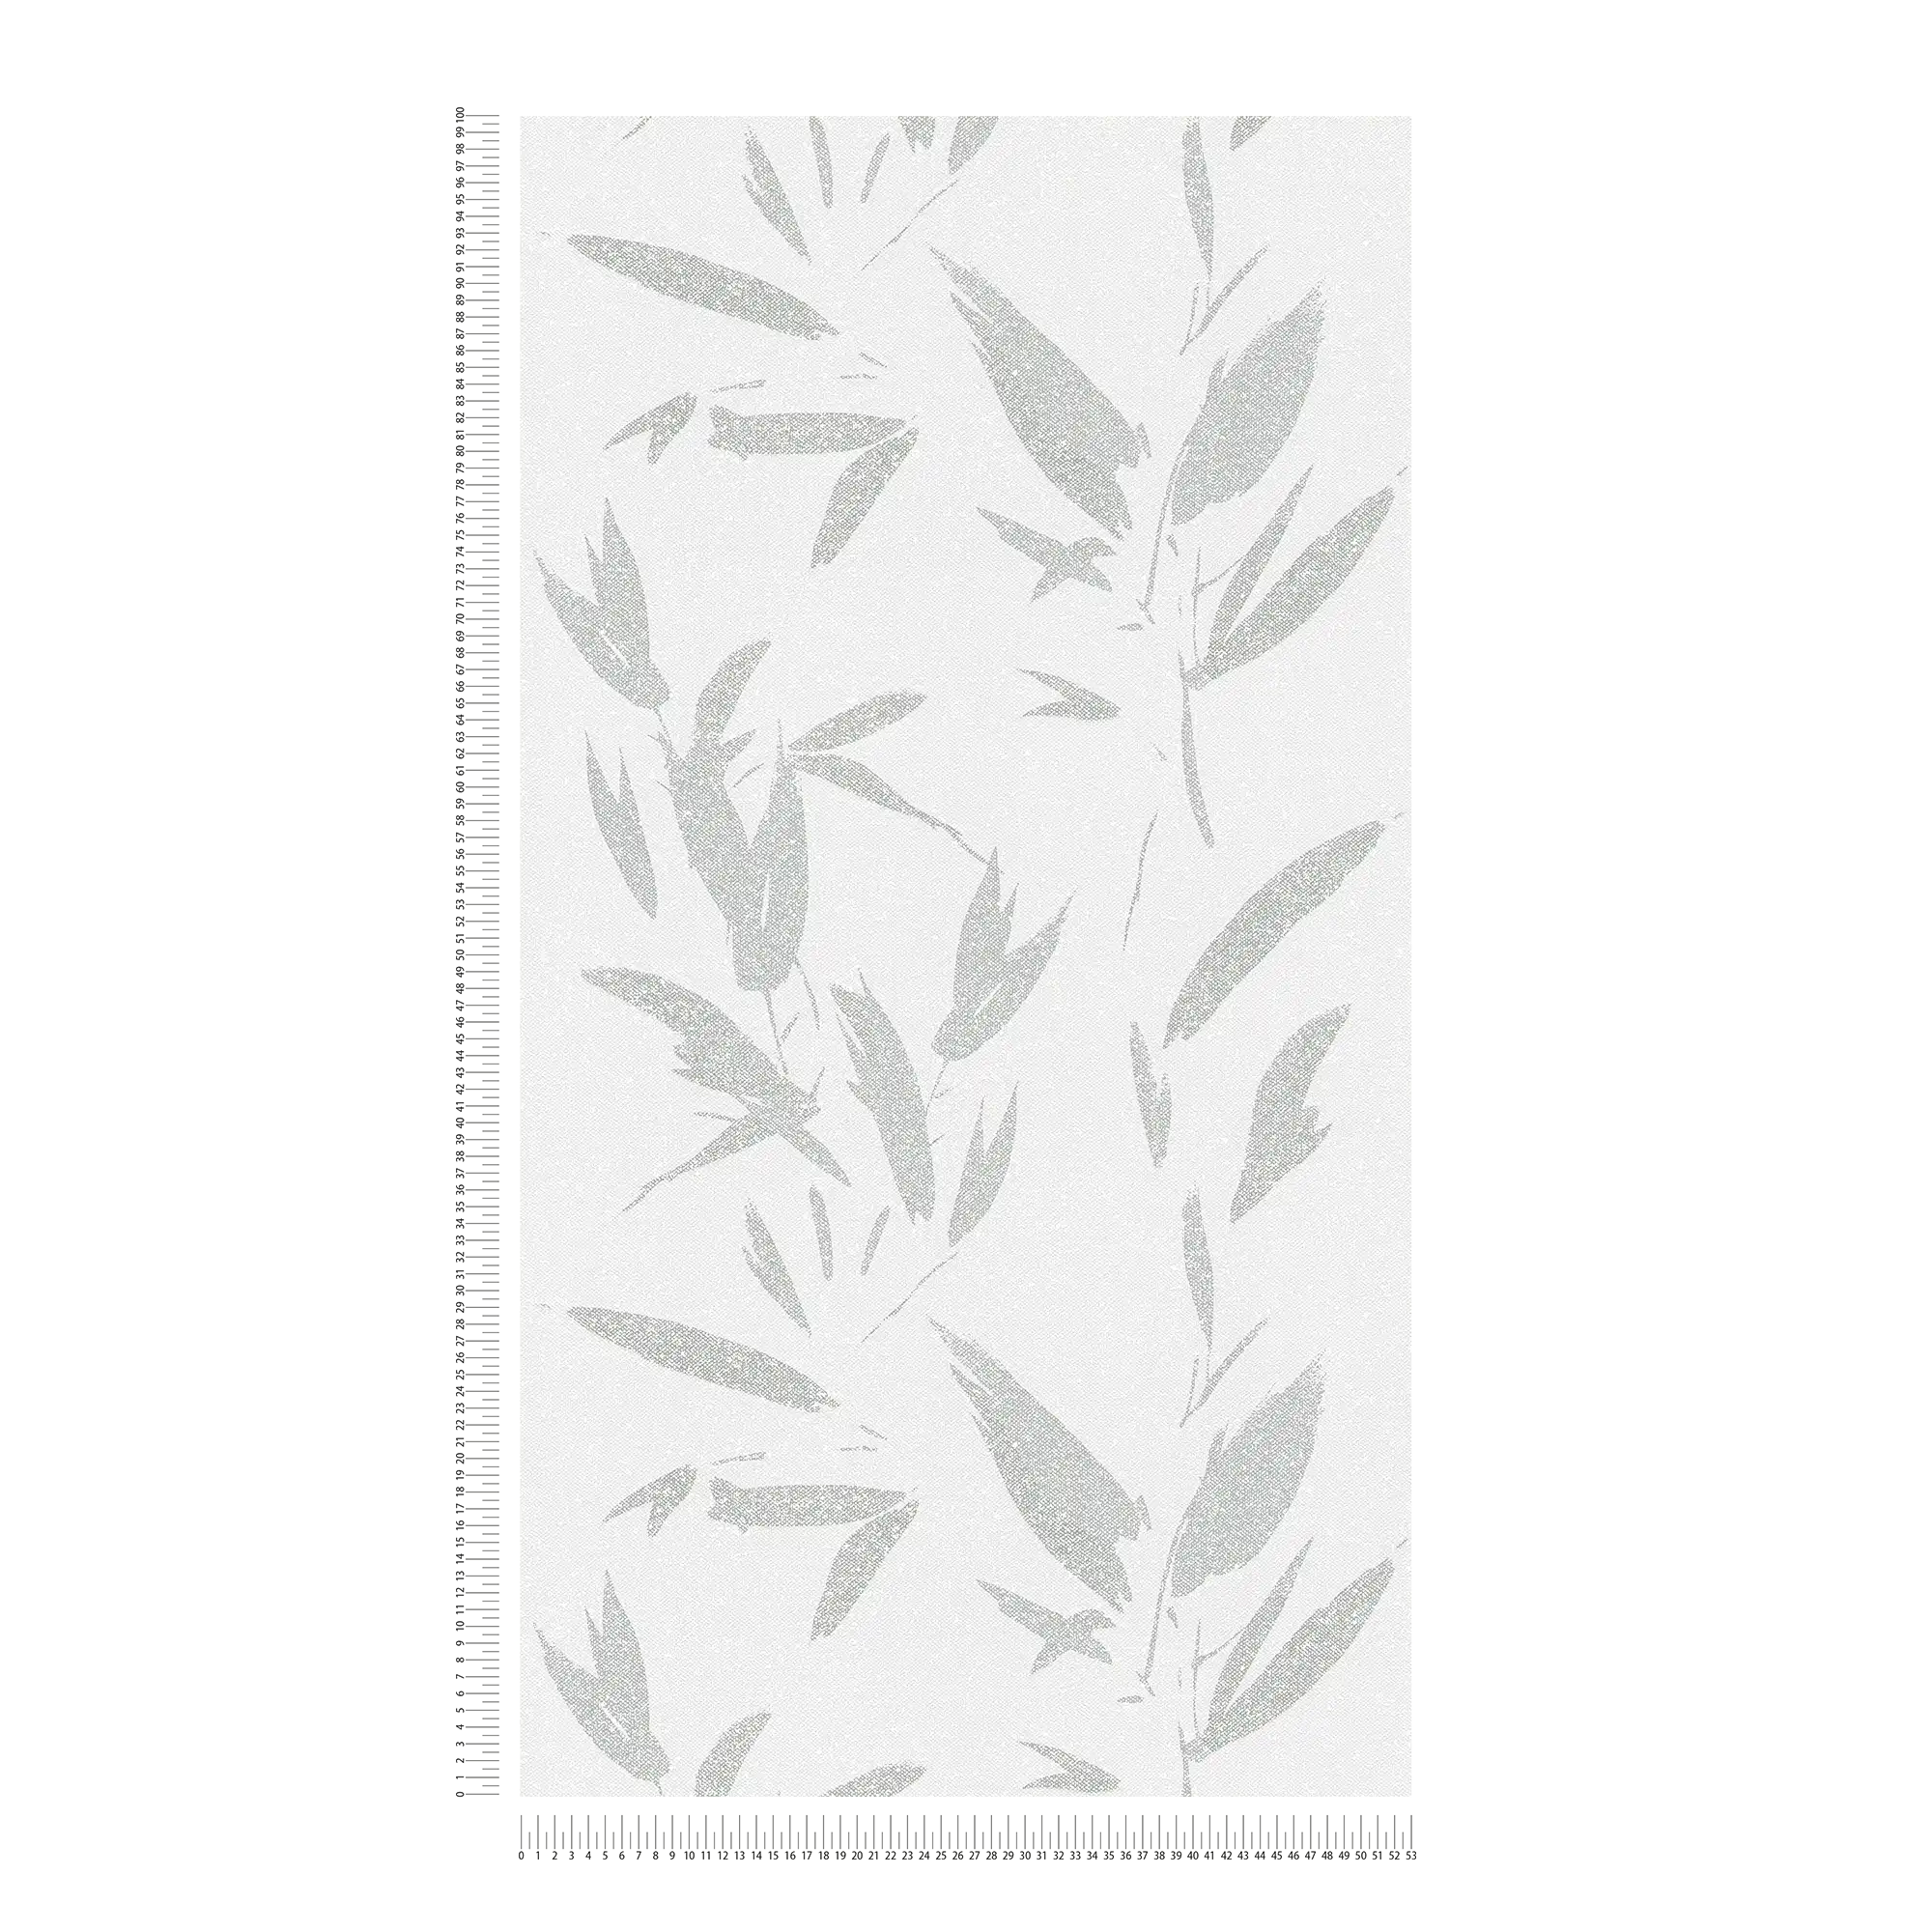             Carta da parati in tessuto non tessuto con motivo a foglie astratto, aspetto tessile - bianco, crema, grigio
        